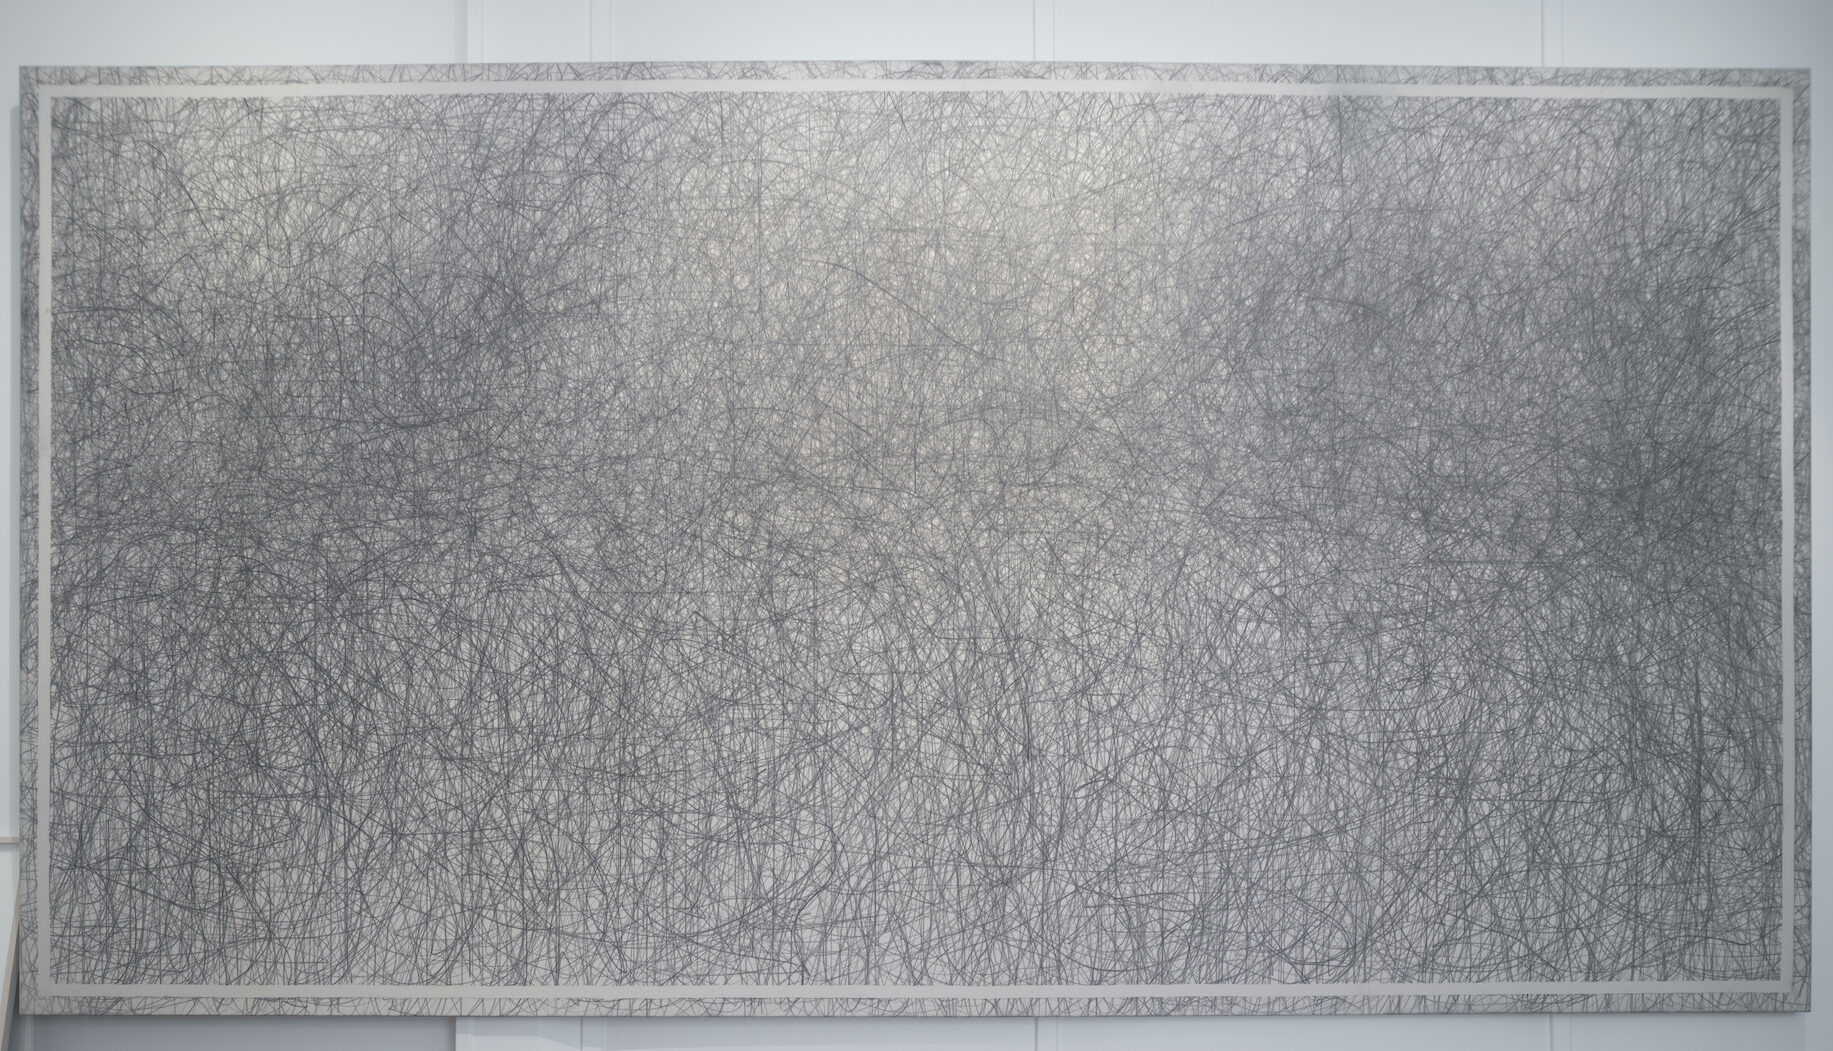 William Anastasi, Resignation II, 1989, graphite sur toile, 190 x 359 x 4,5 cm, non encadré.